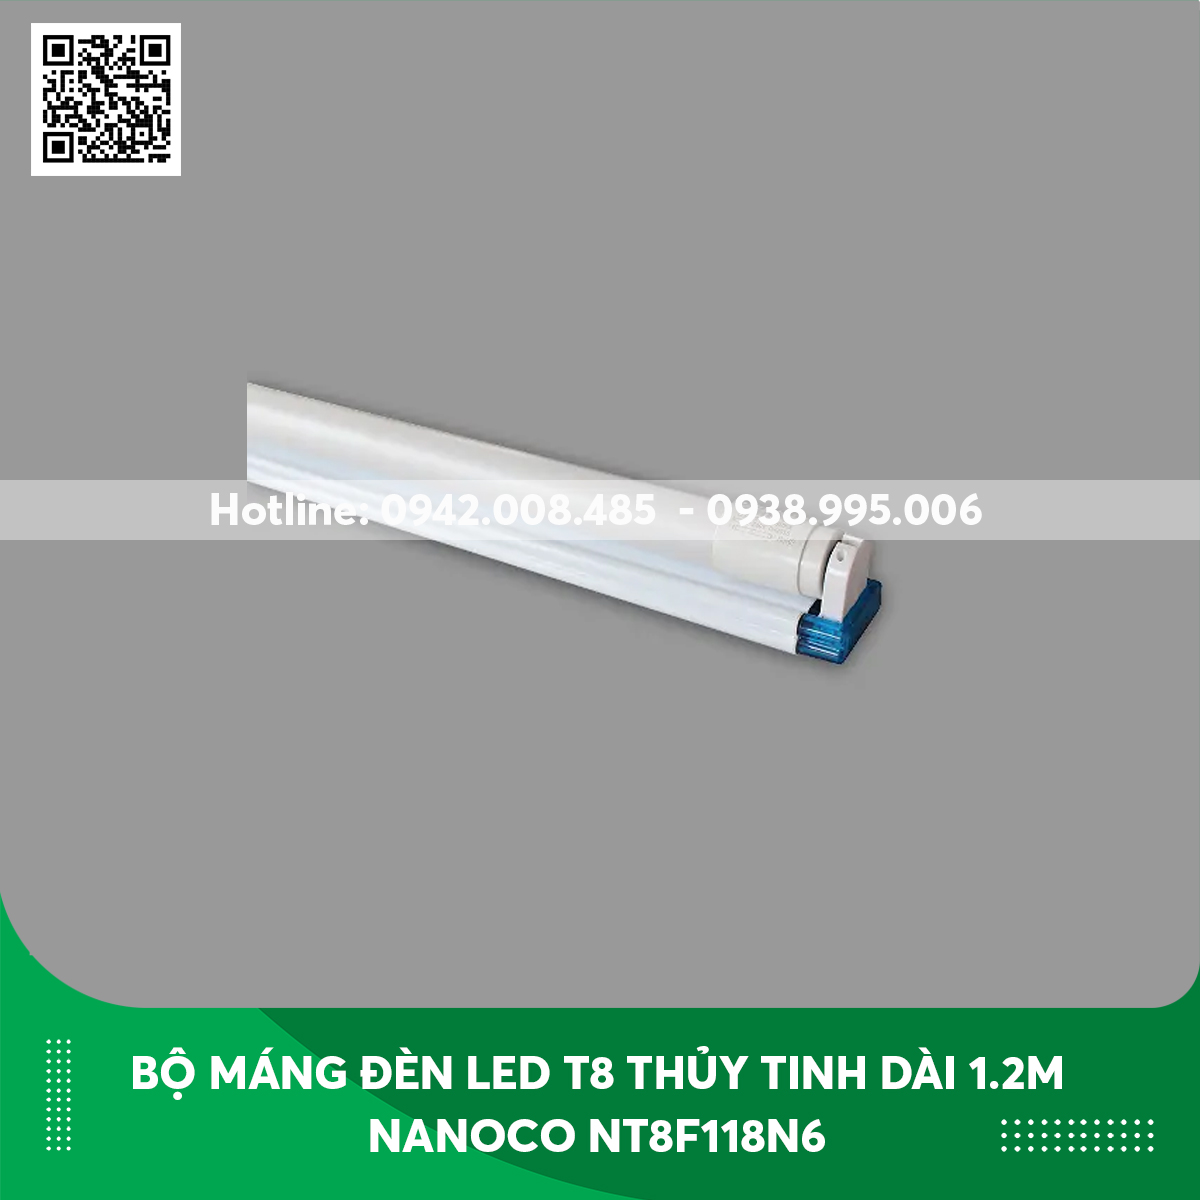 Bộ máng đèn LED T8 thủy tinh bọc nhựa Dài 1.2m Nanoco NT8F118N6 ánh sáng trắng